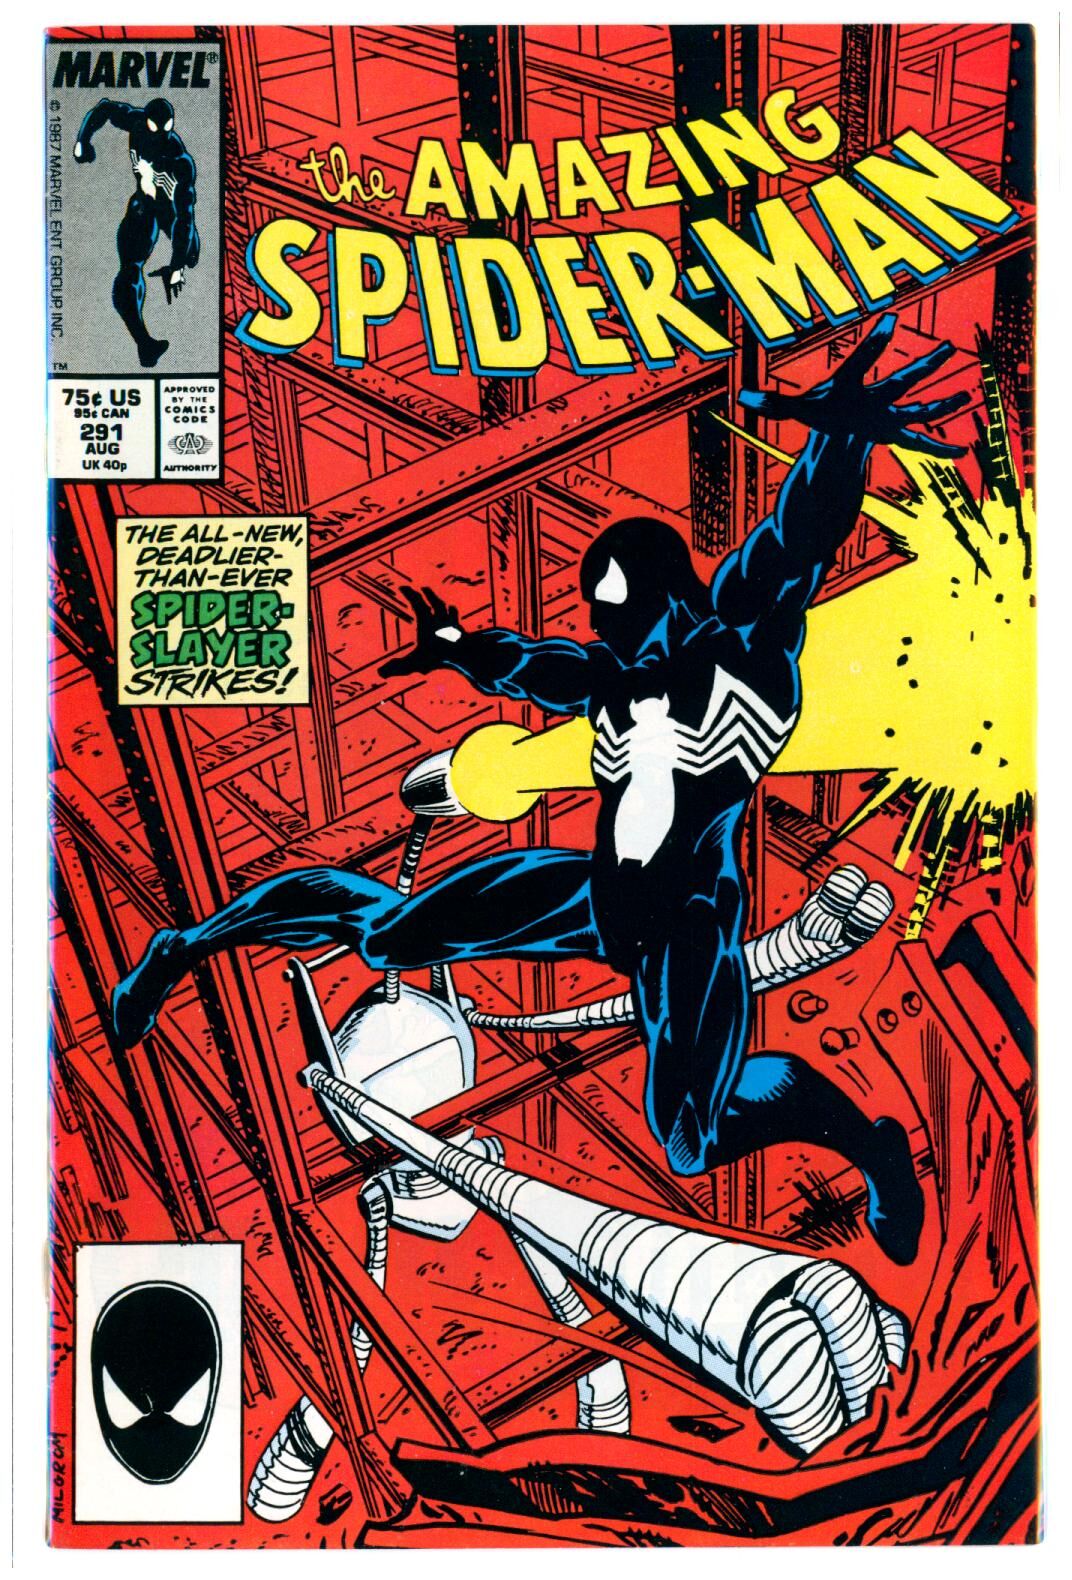 Amazing Spider-Man #291